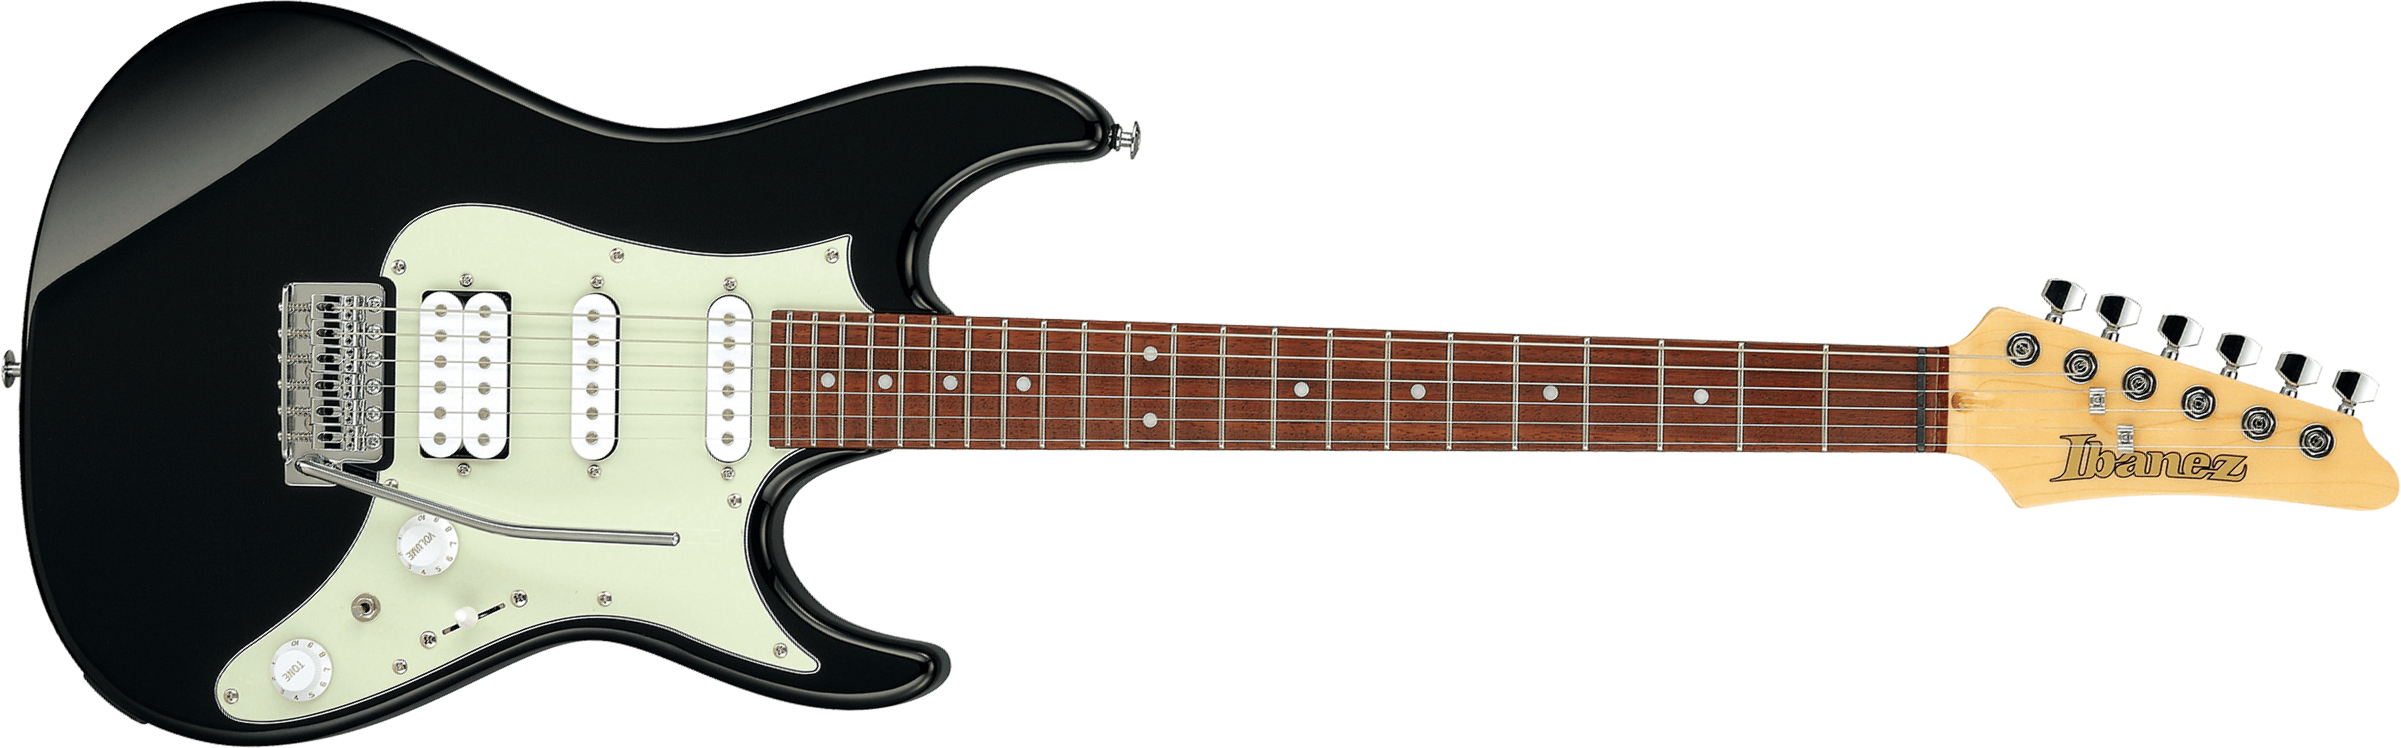 Ibanez Azes 40 Bk Standard Hss Trem Jat - Black - Guitarra eléctrica con forma de str. - Main picture